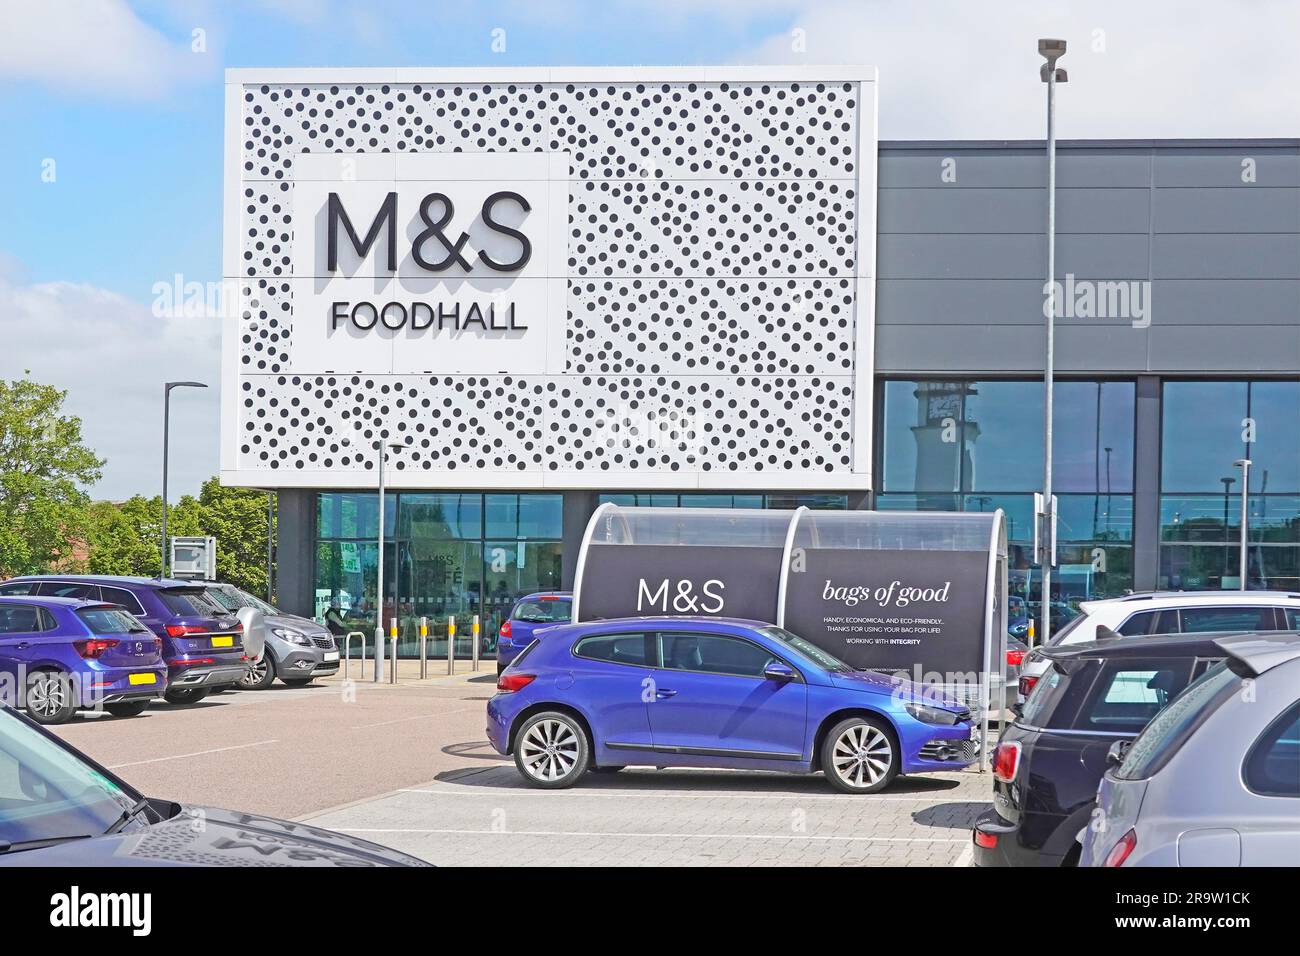 M&S Foodhall Moderne Architektur Geschäft Front Marks und Spencer im Einzelhandel Lebensmittelhalle Shopping & Kundenwagen Obdach Chelmsford Essex England Großbritannien Stockfoto